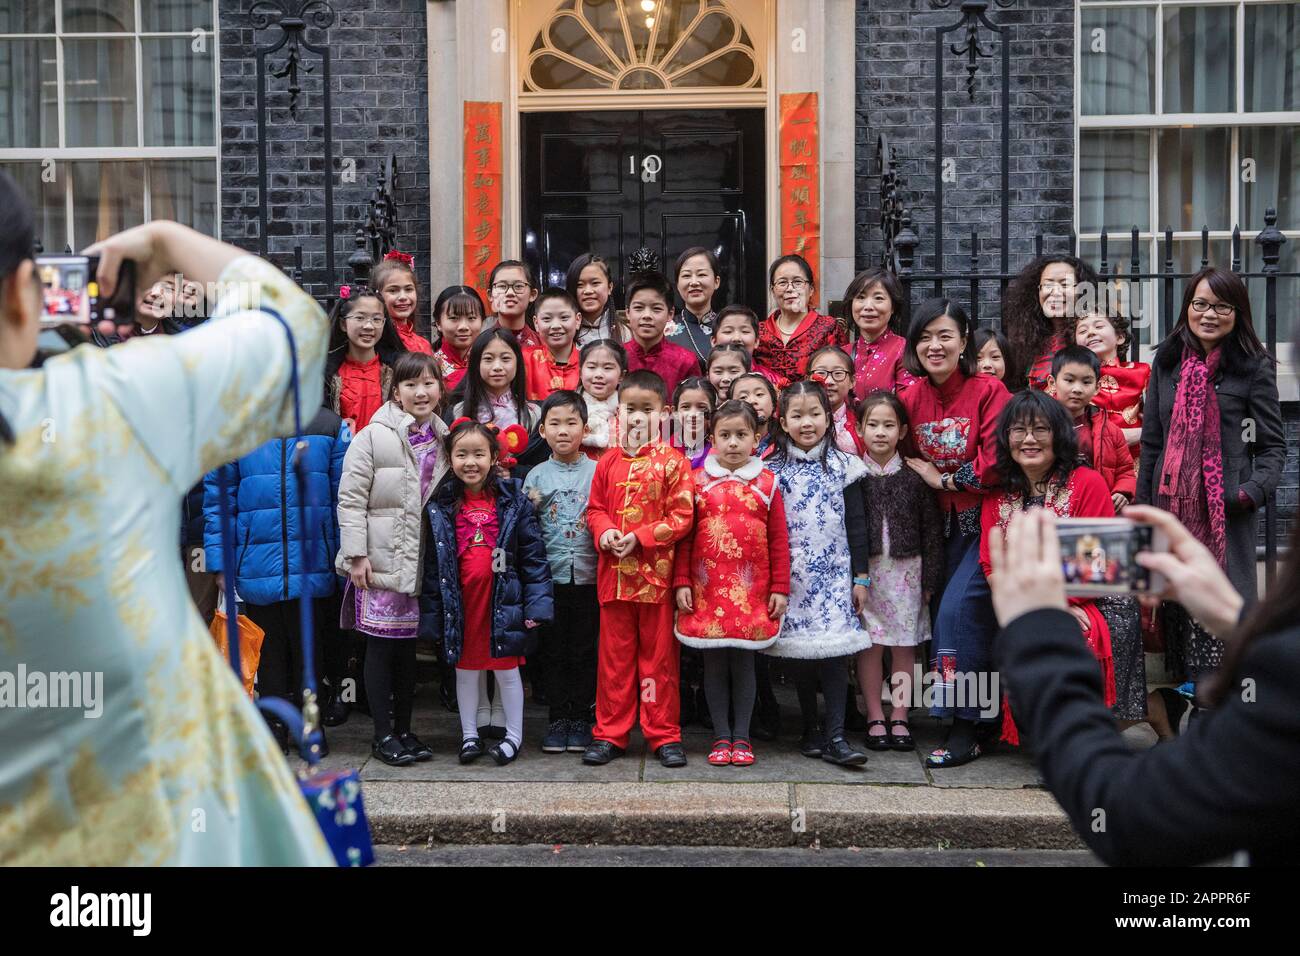 Los estudiantes jóvenes de la Escuela de Chino Woking disfrutan de una visita a 10 Downing Street, Londres, en celebración del año Nuevo Chino. Foto de stock